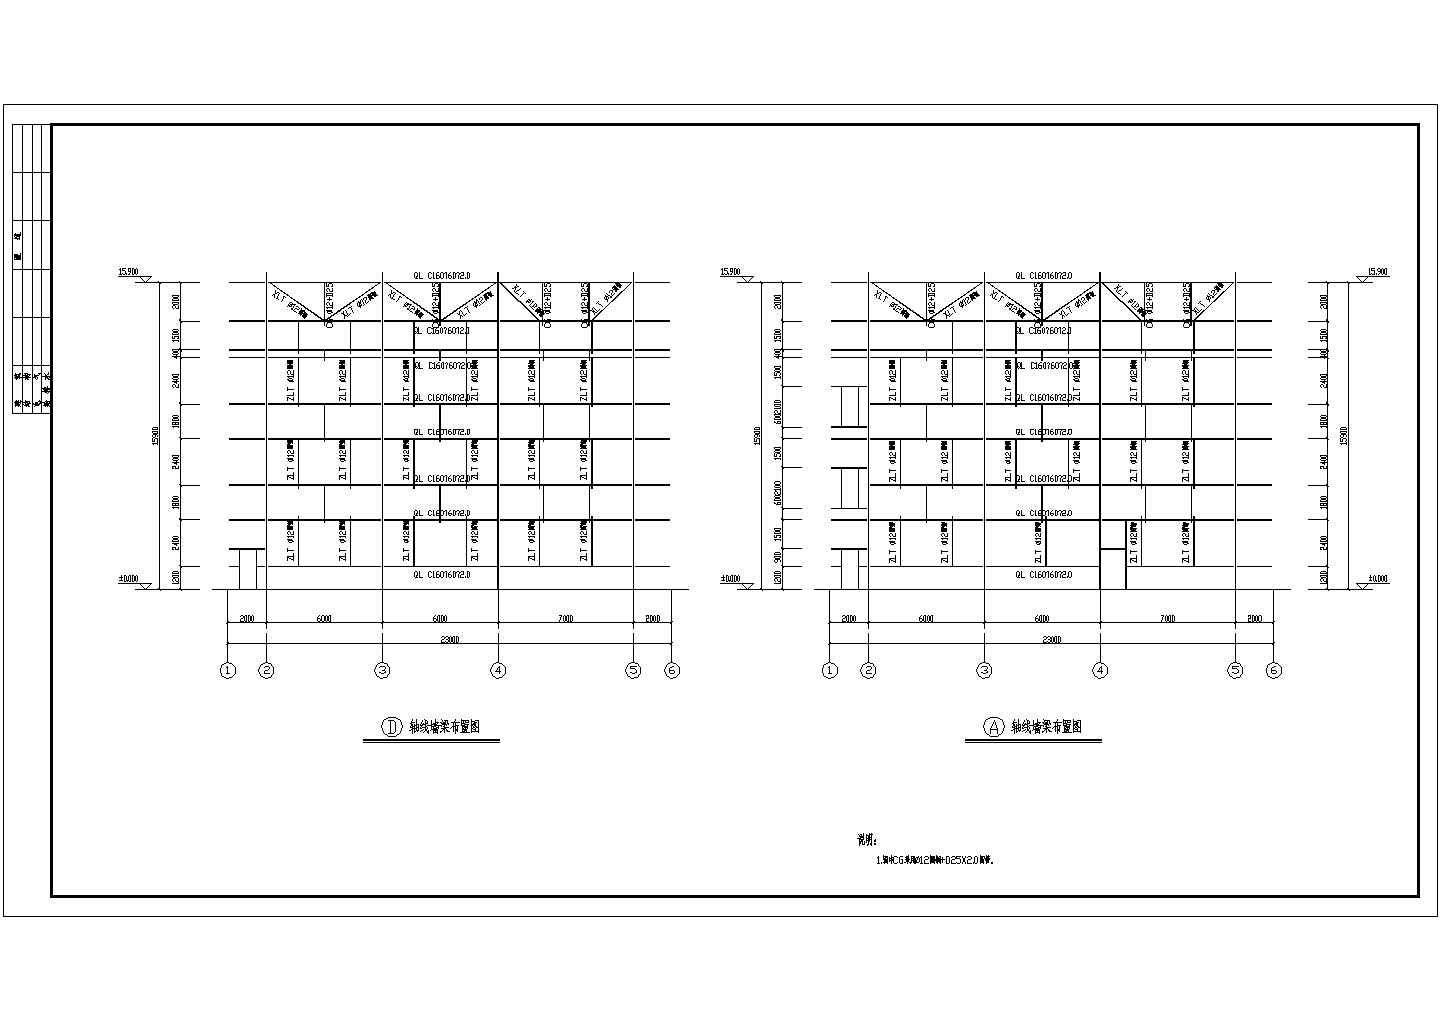 西安利君制药厂302车间发酵改造施工设计cad图(含标高4.050梁布置图)